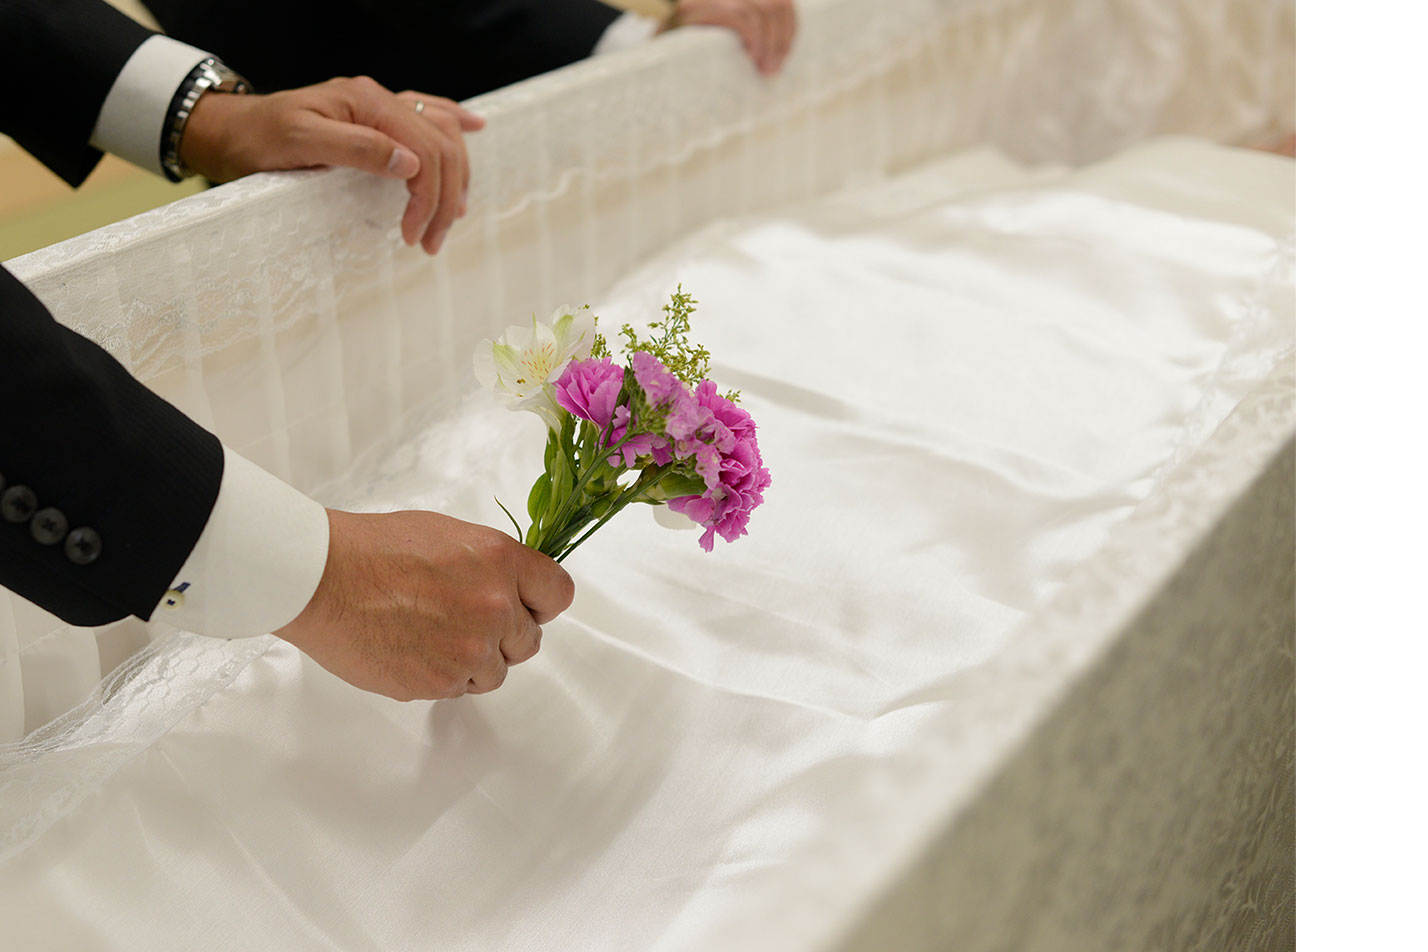  丸亀・宇多津における家族葬の流れとは？のイメージ画像